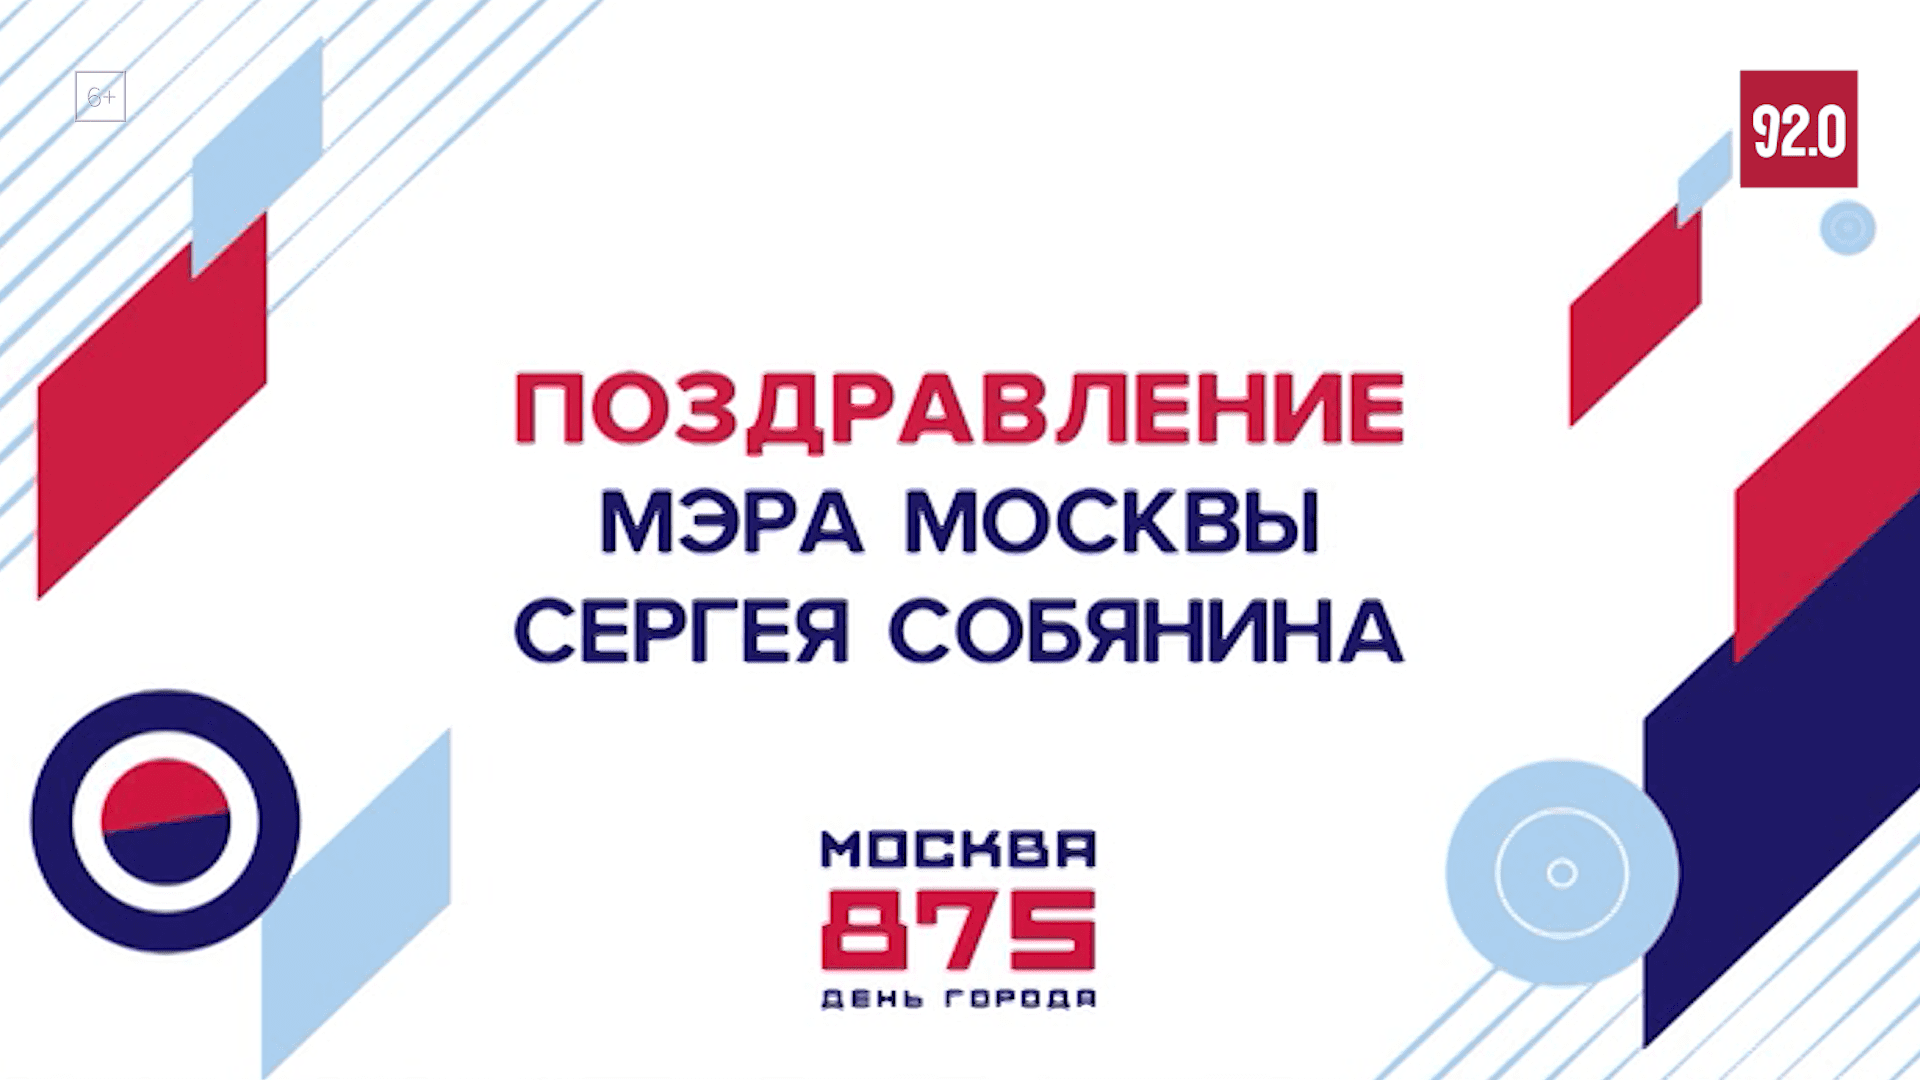 Мэр столицы поздравил москвичей с 875-летием города — Москва FM